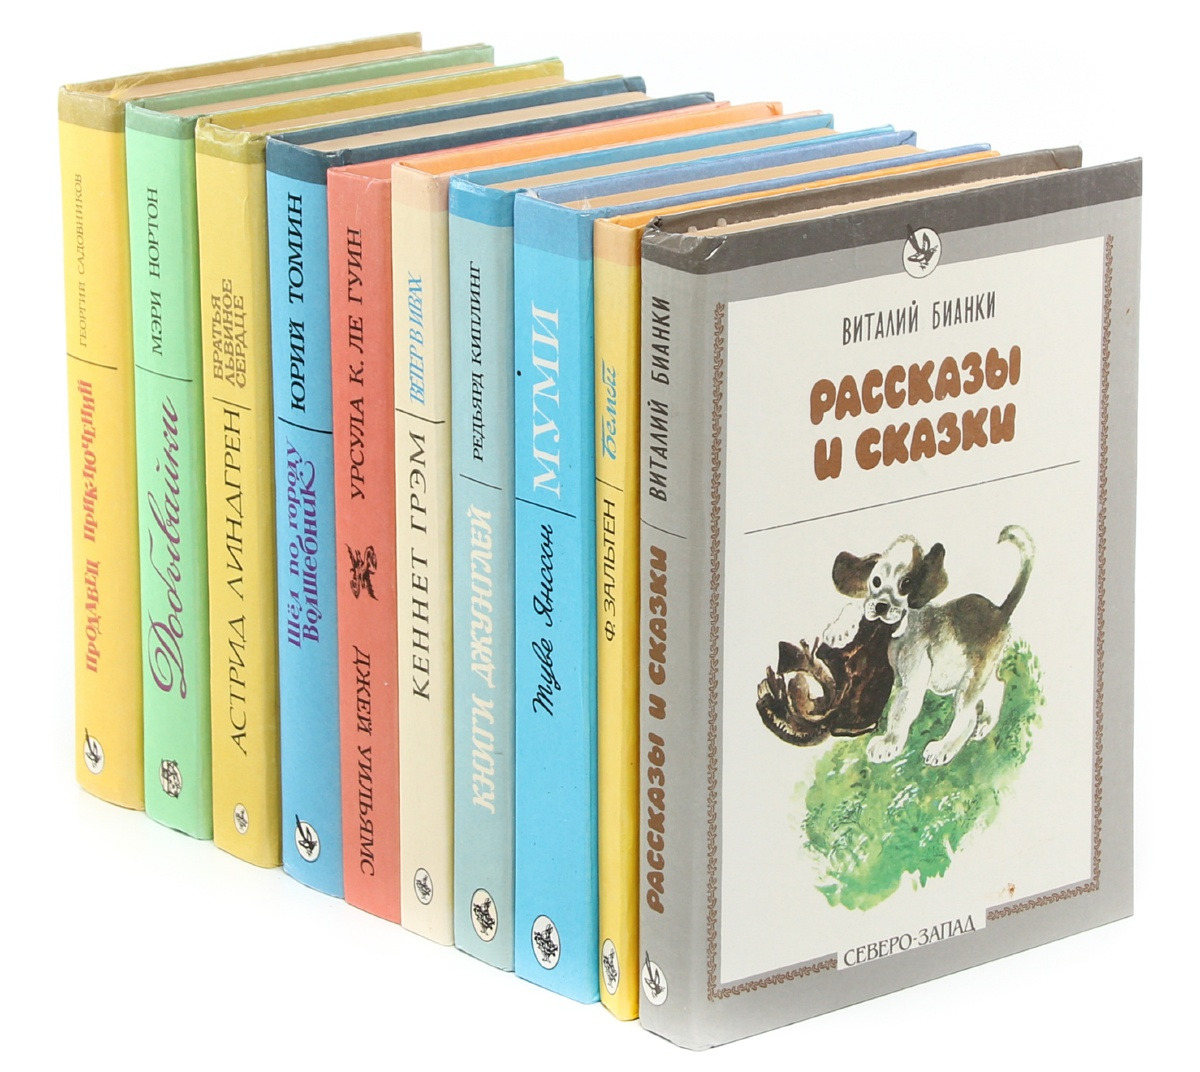 Где Купить Детские Книги Дешево В Москве